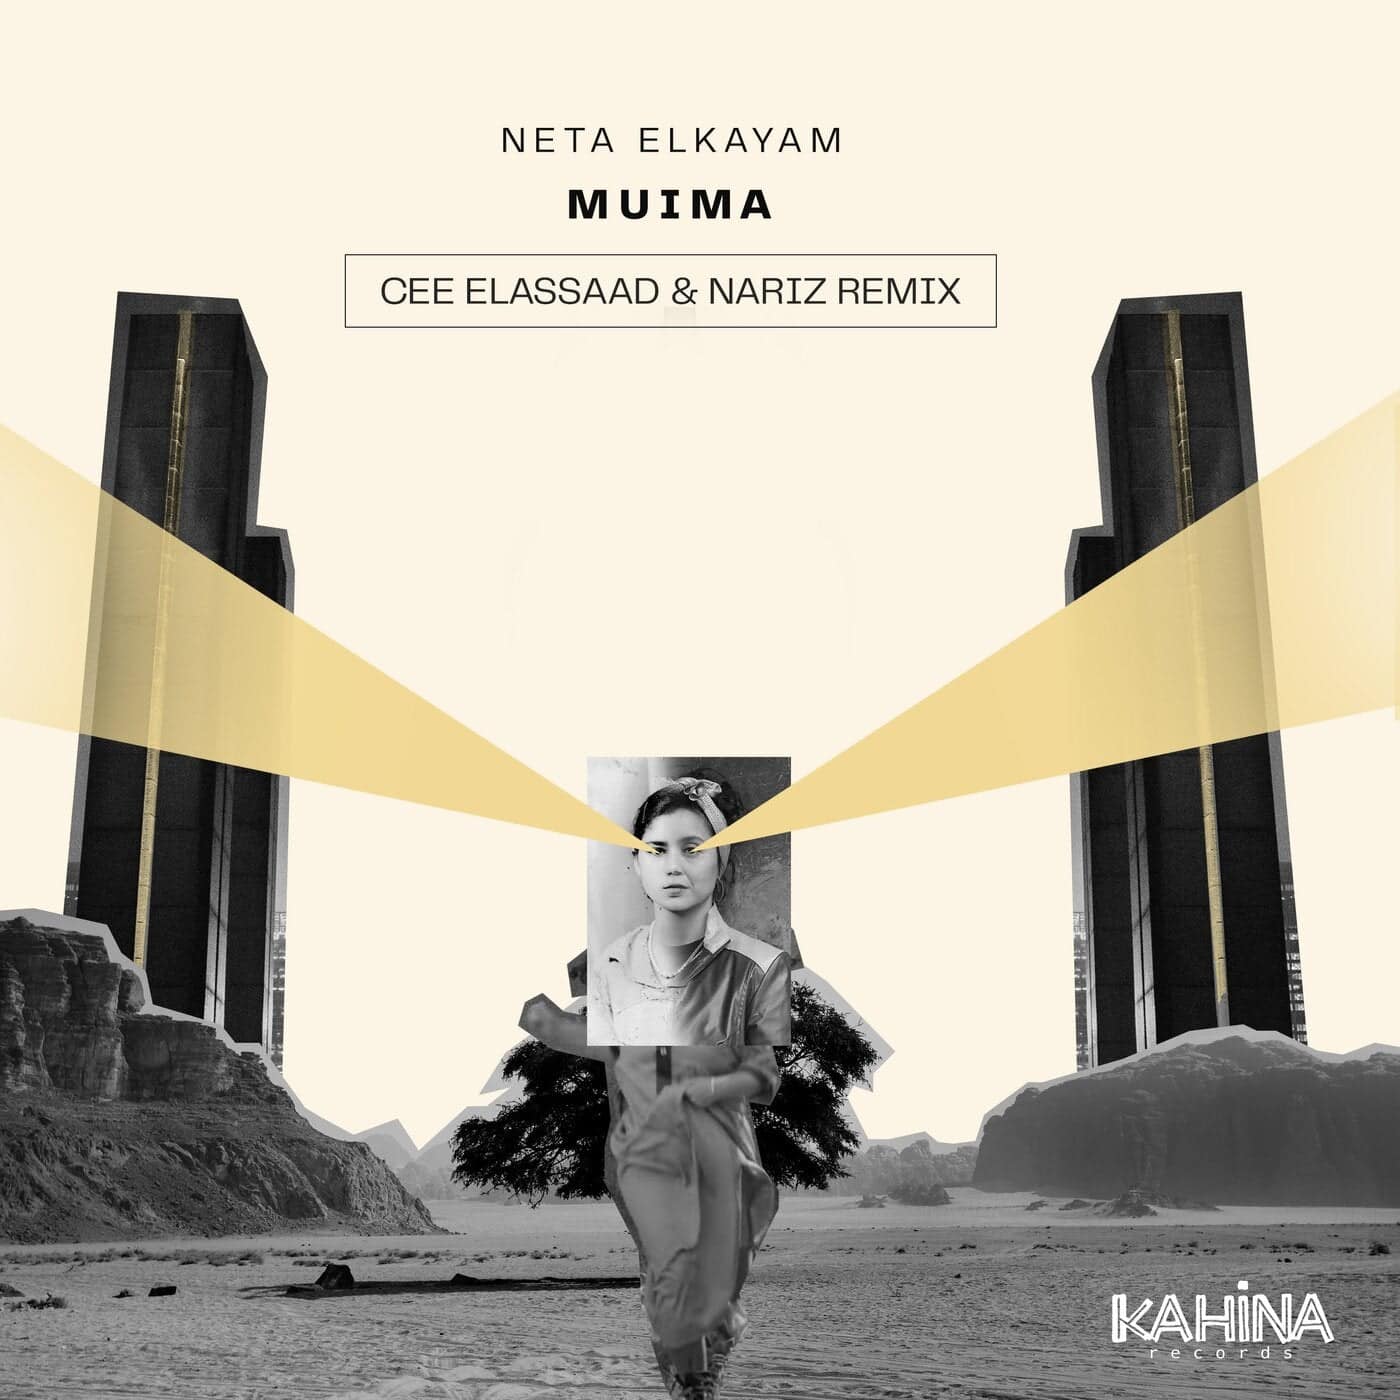 image cover: Cee ElAssaad, Nariz (IL), Neta ElKayam - Muima (Cee ElAssaad & Nariz Remix) / KR009